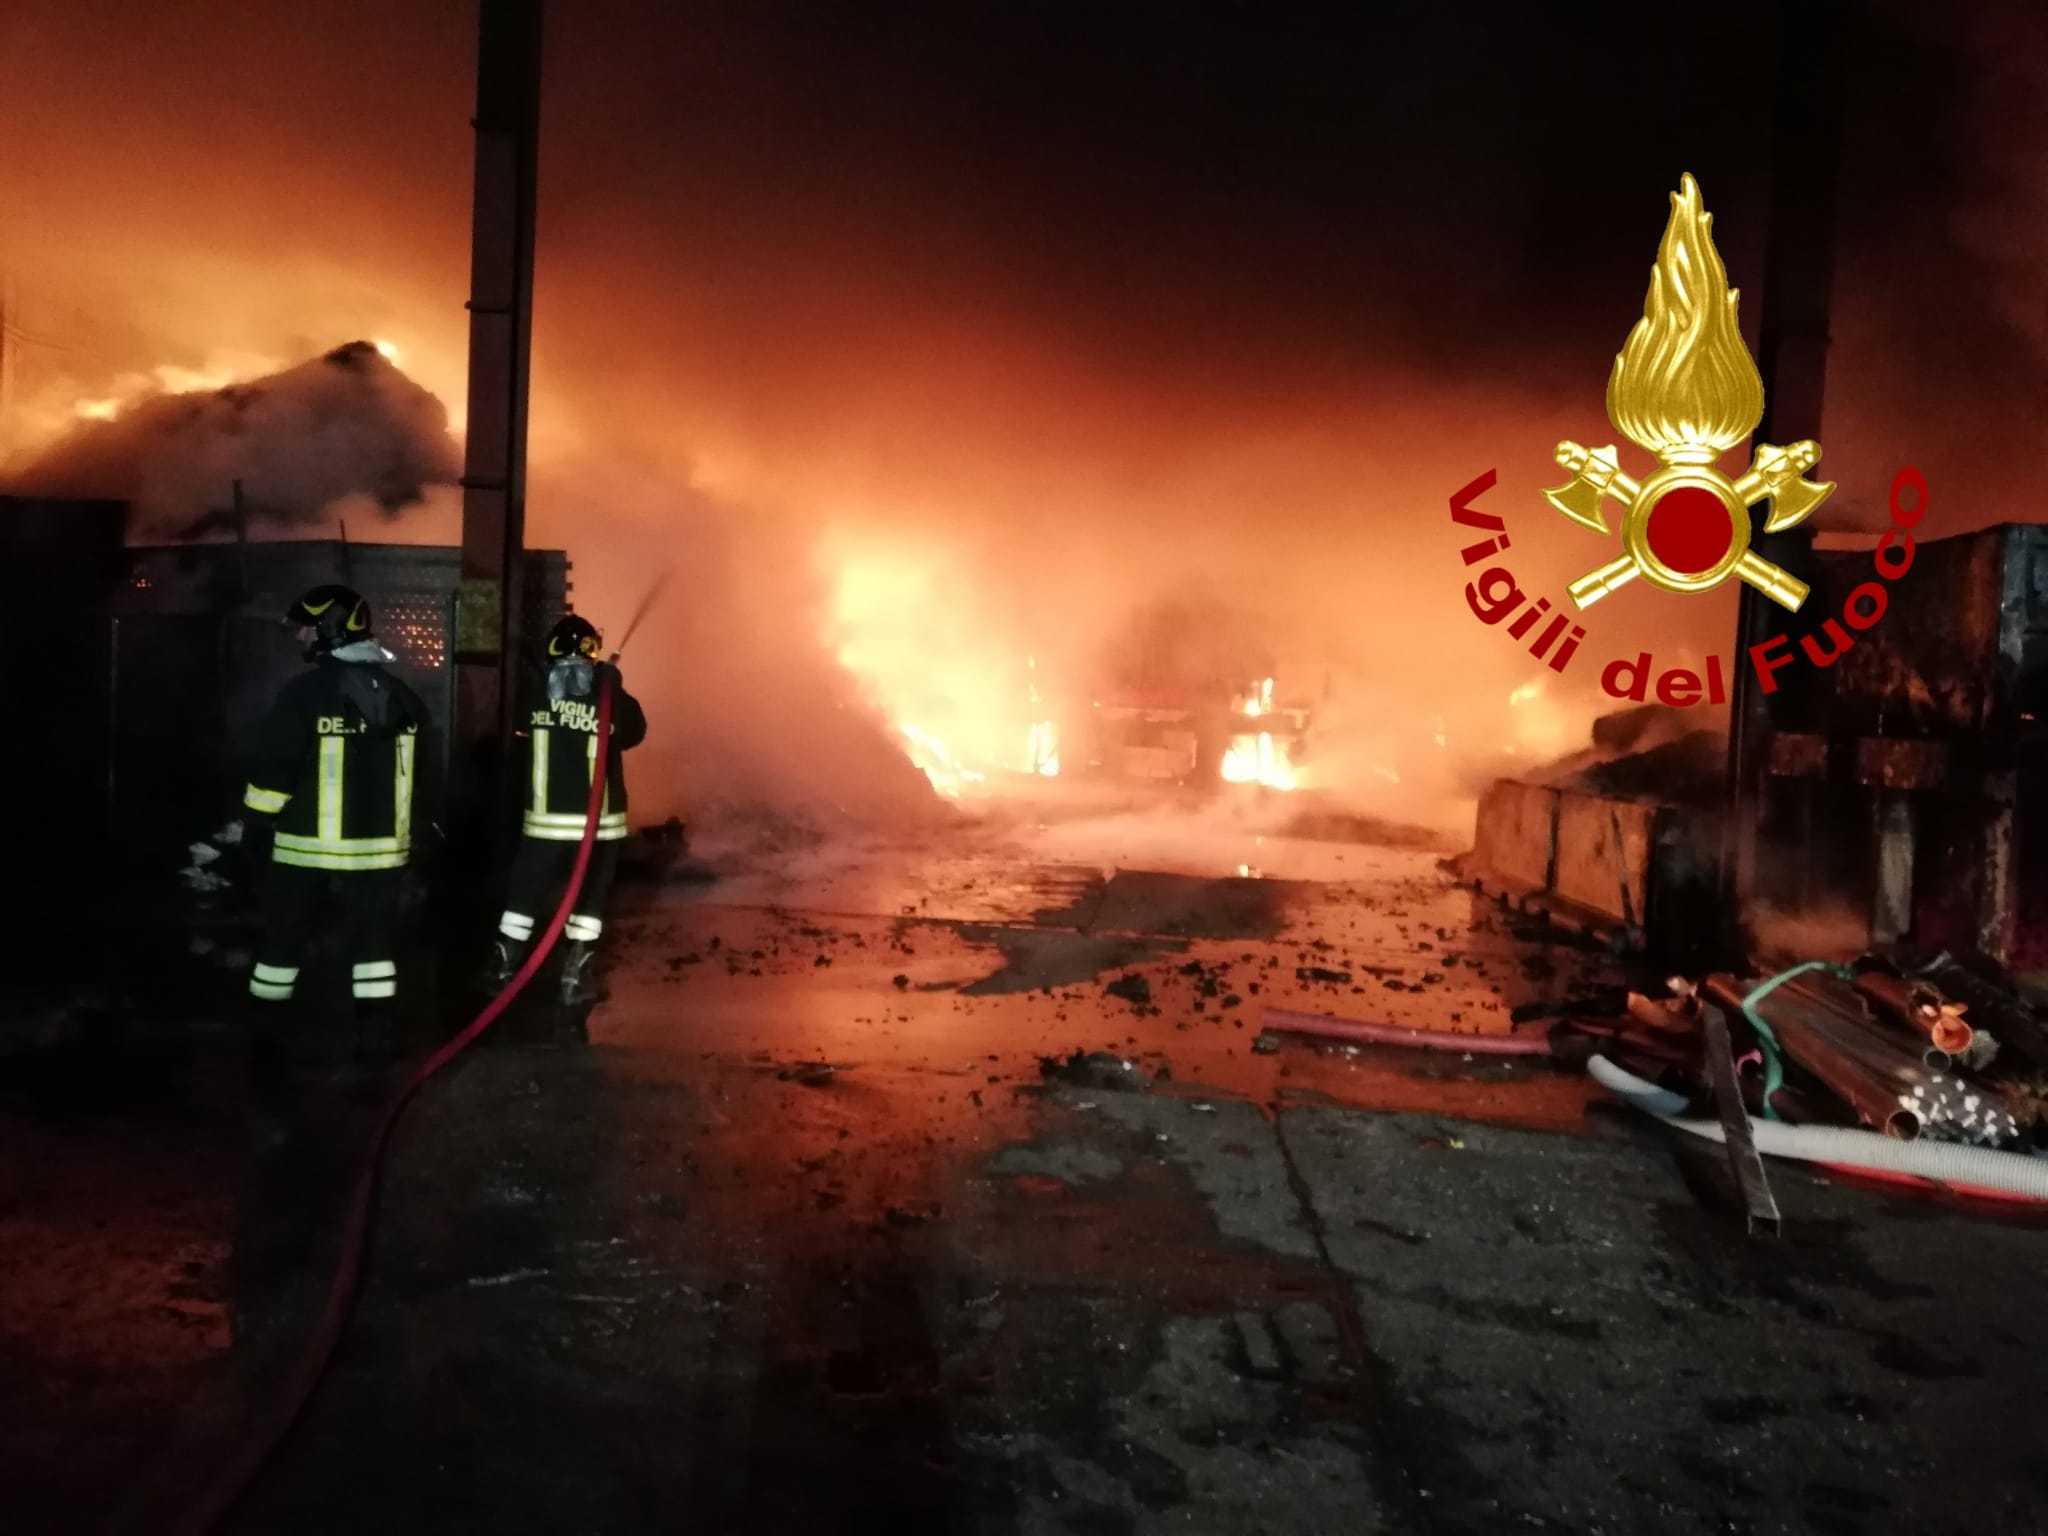 Due grossi incendi all'interno di un'azienda nella provincia di Catanzaro sul posto i Vvf